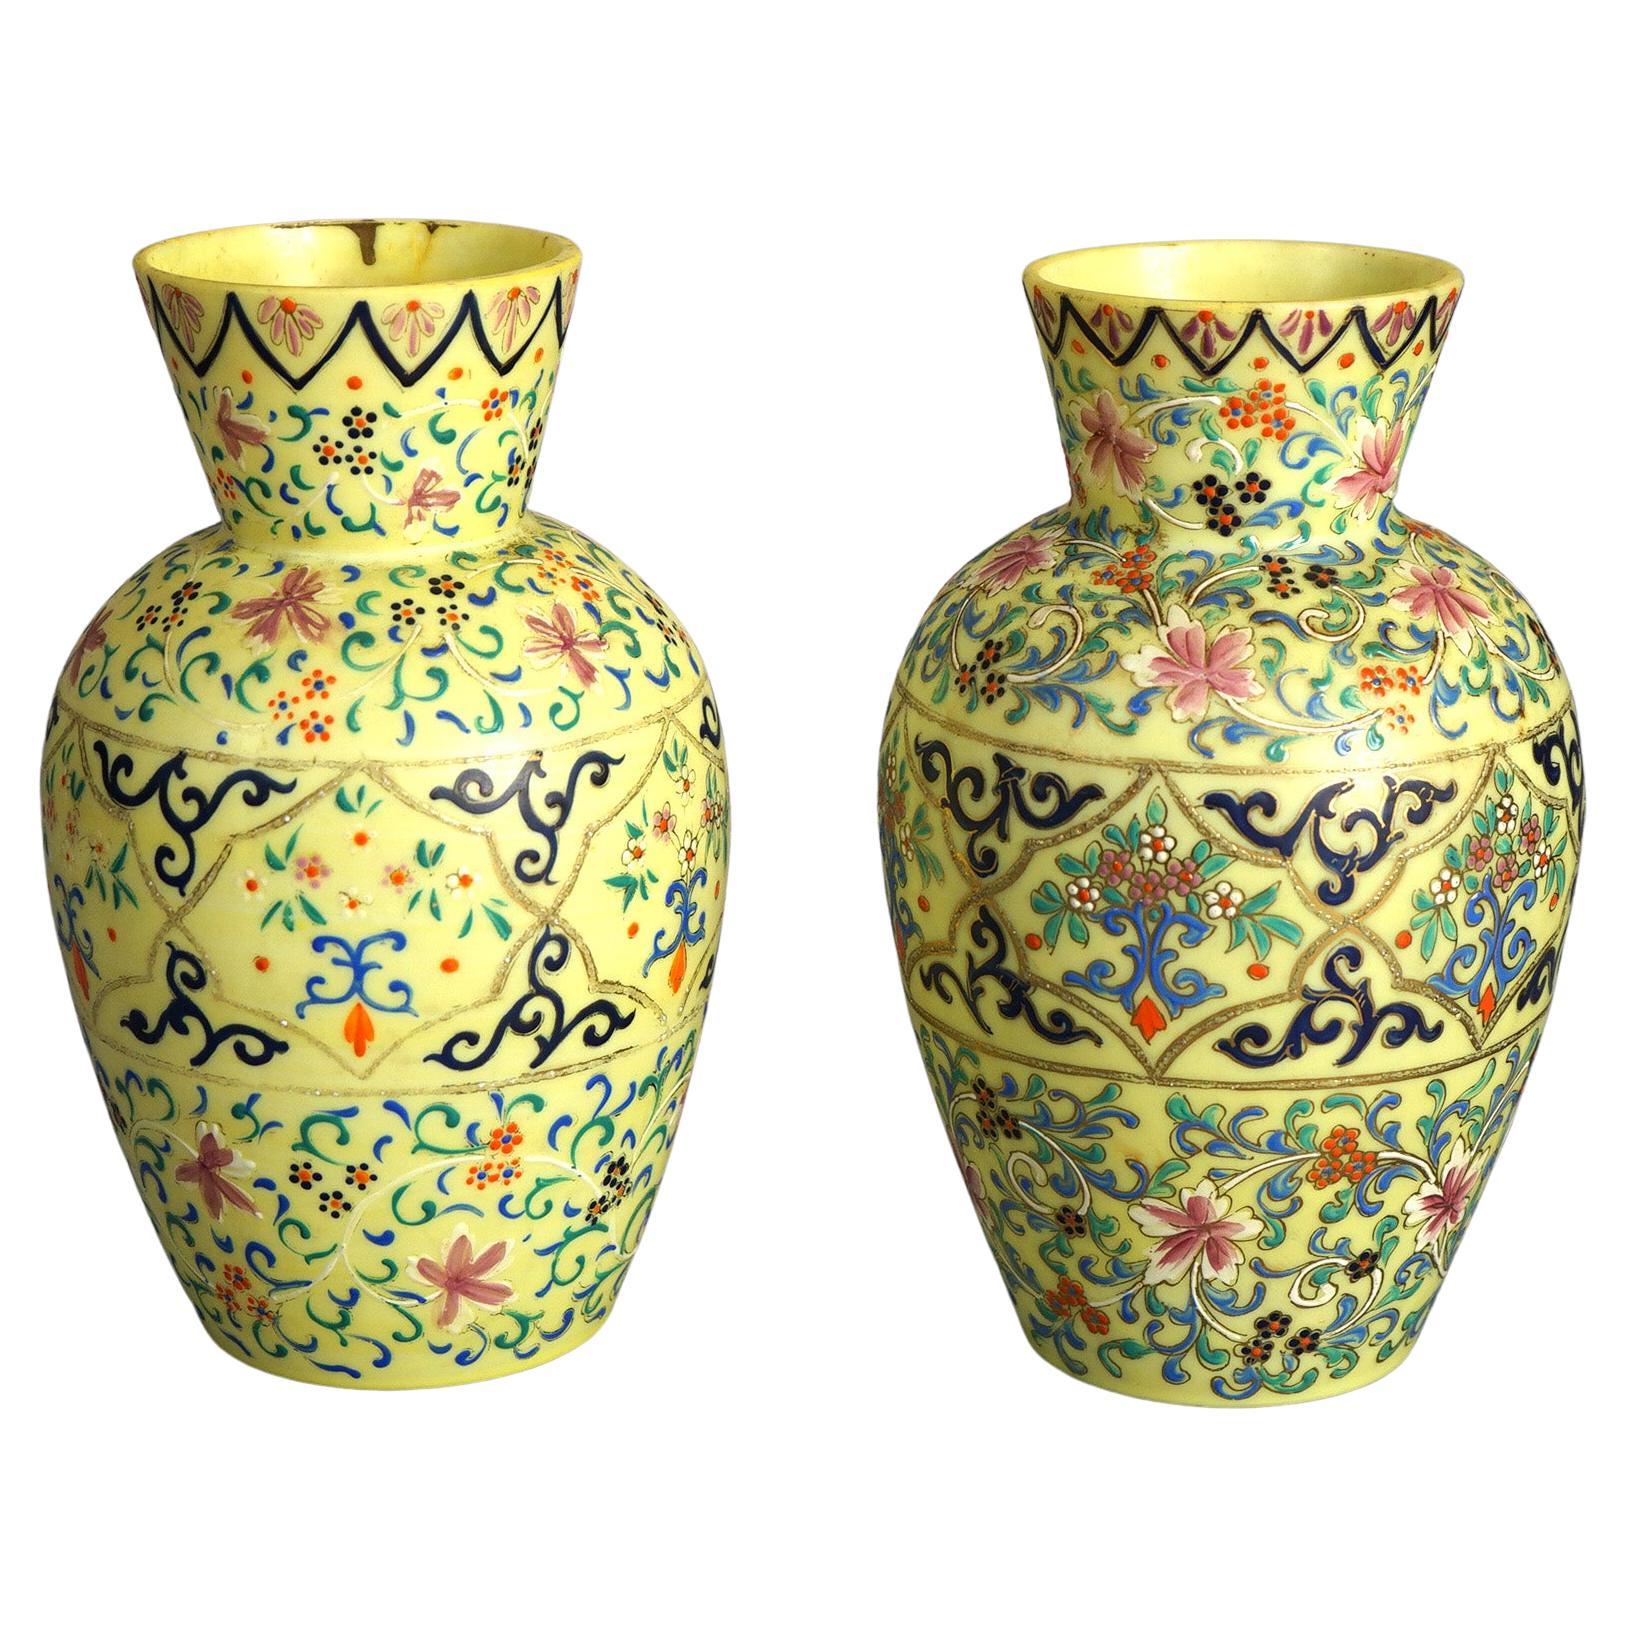 Paire de vases anciens en verre d'art décorés d'émail opalin avec des éléments floraux et des volutes, C1900

Dimensions - 8,5 